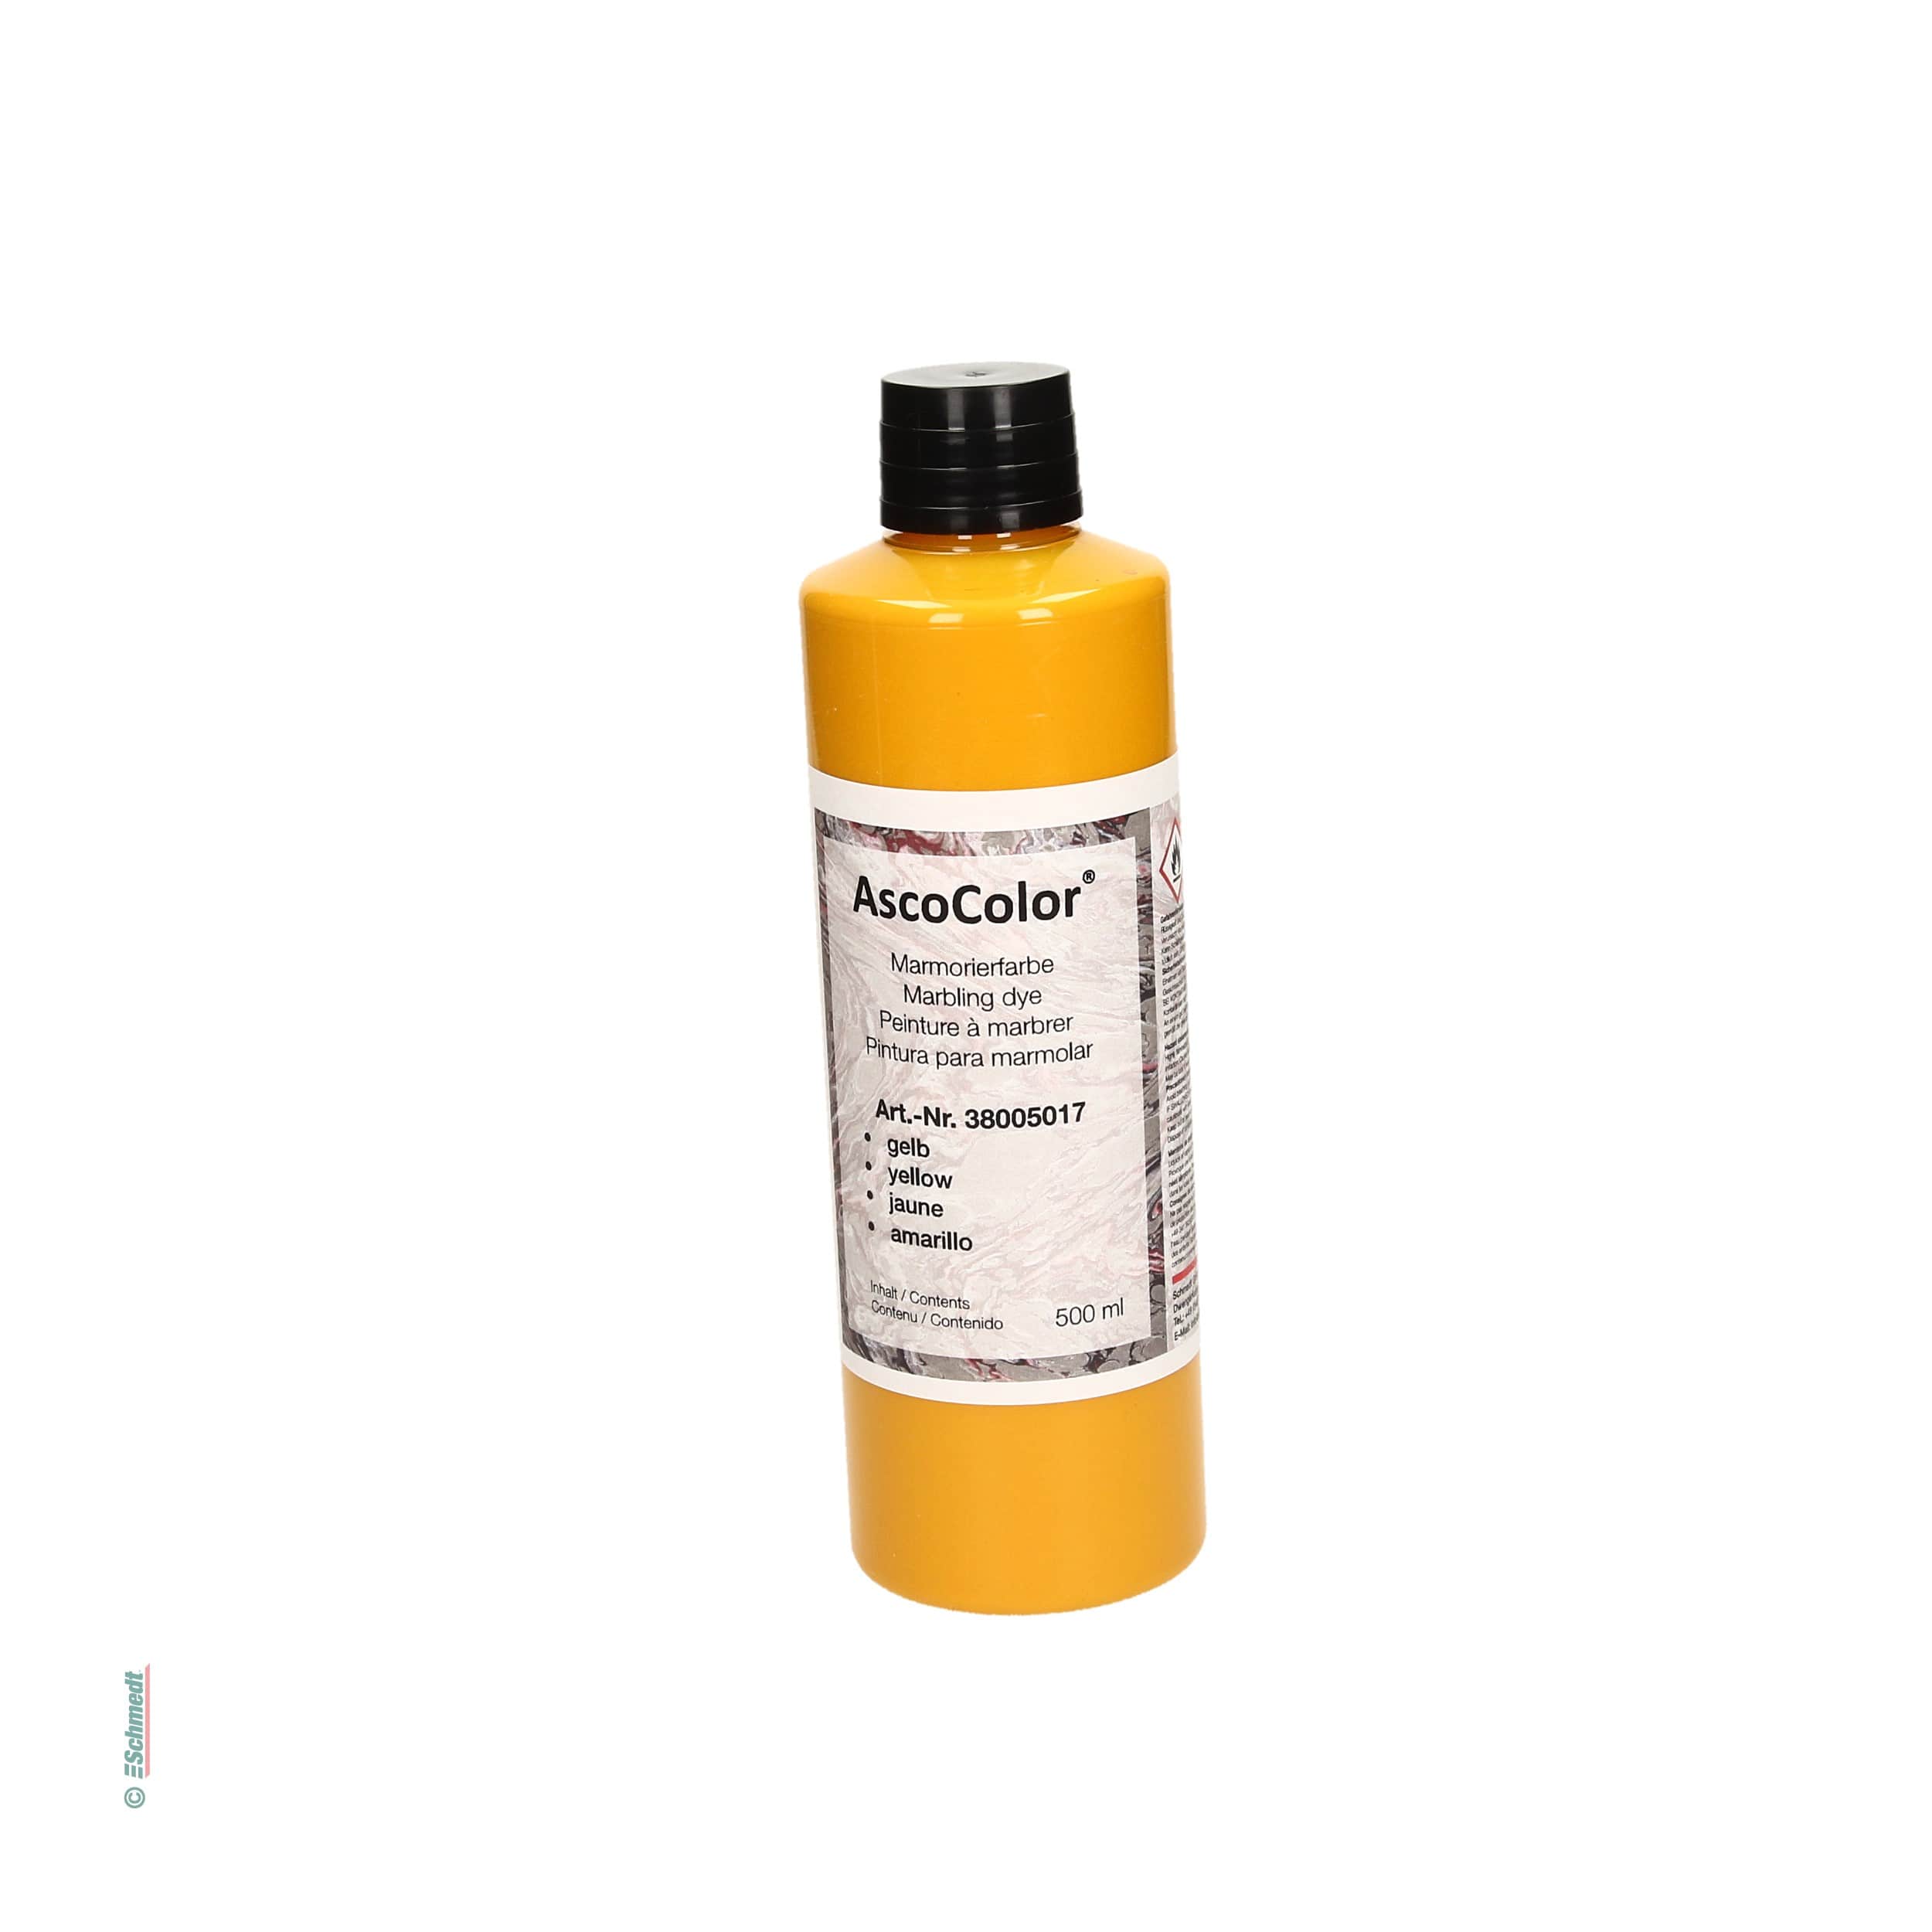 AscoColor® Marmorierfarbe - Farbe gelb - Gebindegröße Flasche / 500 ml - zur Herstellung marmorierter Papiere... - Bild-1